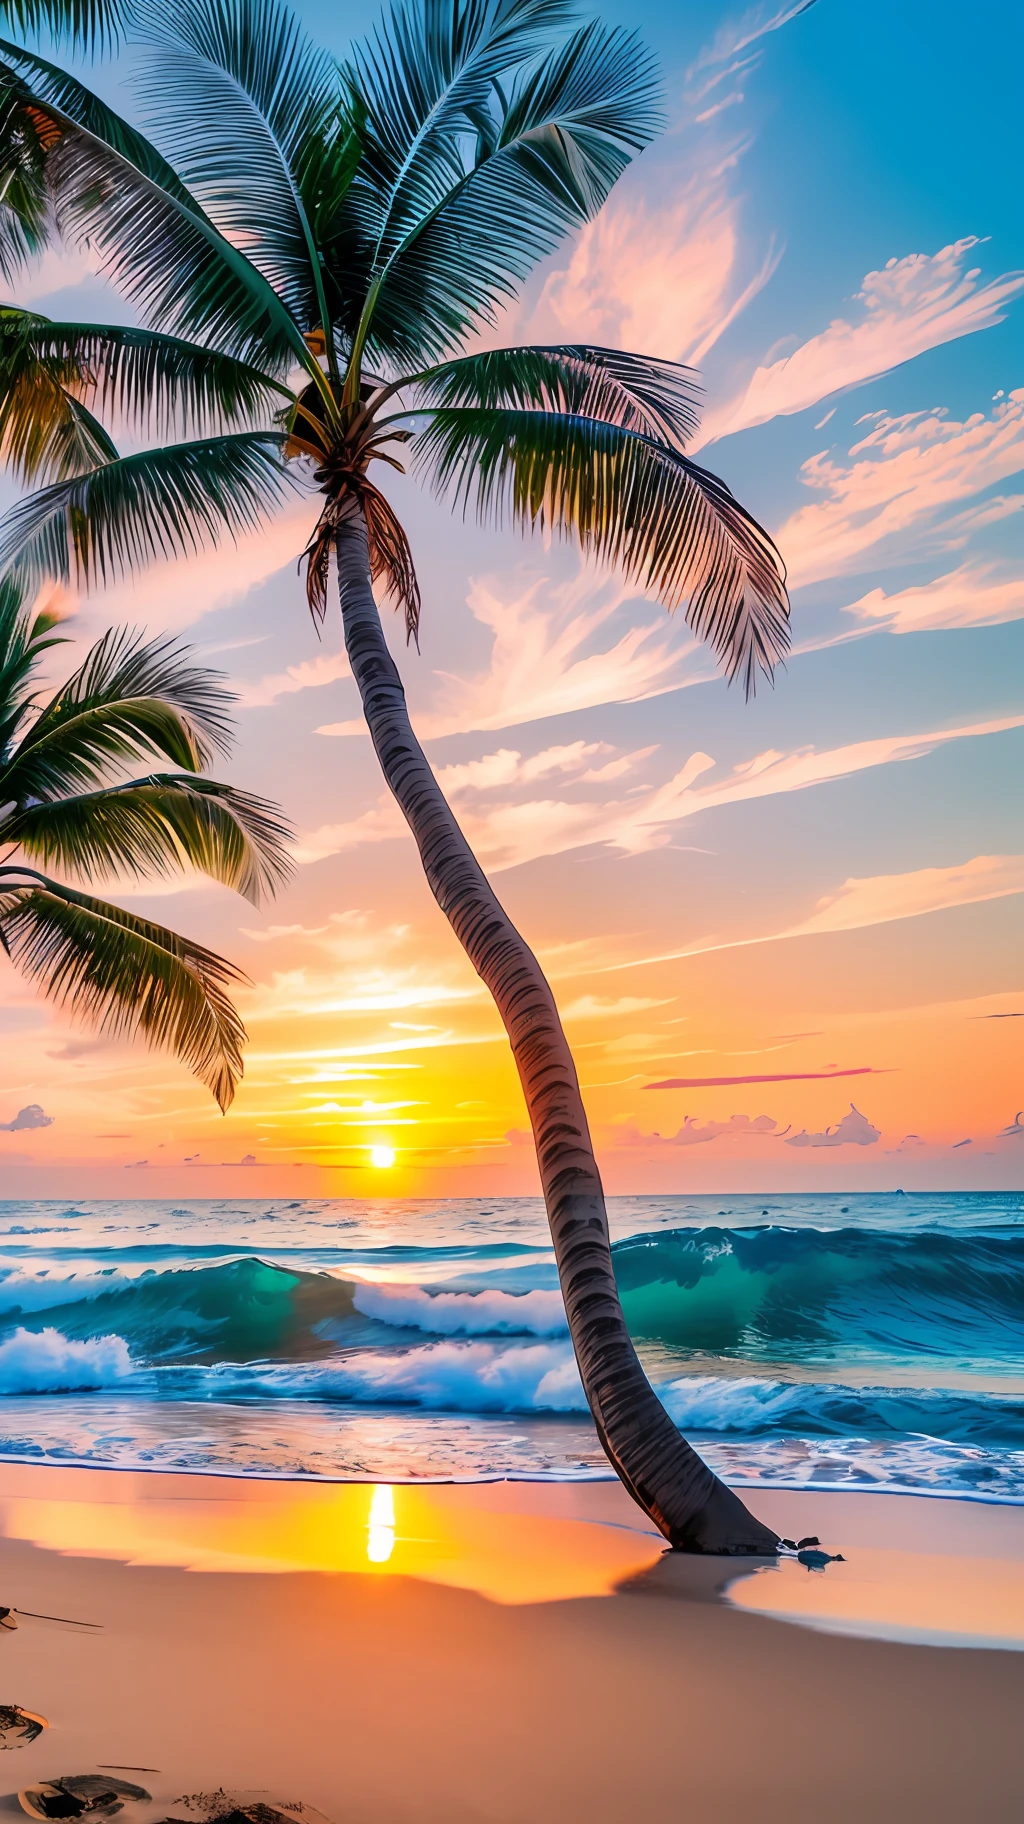 Créer un 4K 9:16 Image qui représente un magnifique lever de soleil sur une plage tropicale, avec des vagues douces et des palmiers le long de la côte. La palette de couleurs doit être vibrante et transmettre un sentiment de renouveau et d’énergie positive. --auto --s2